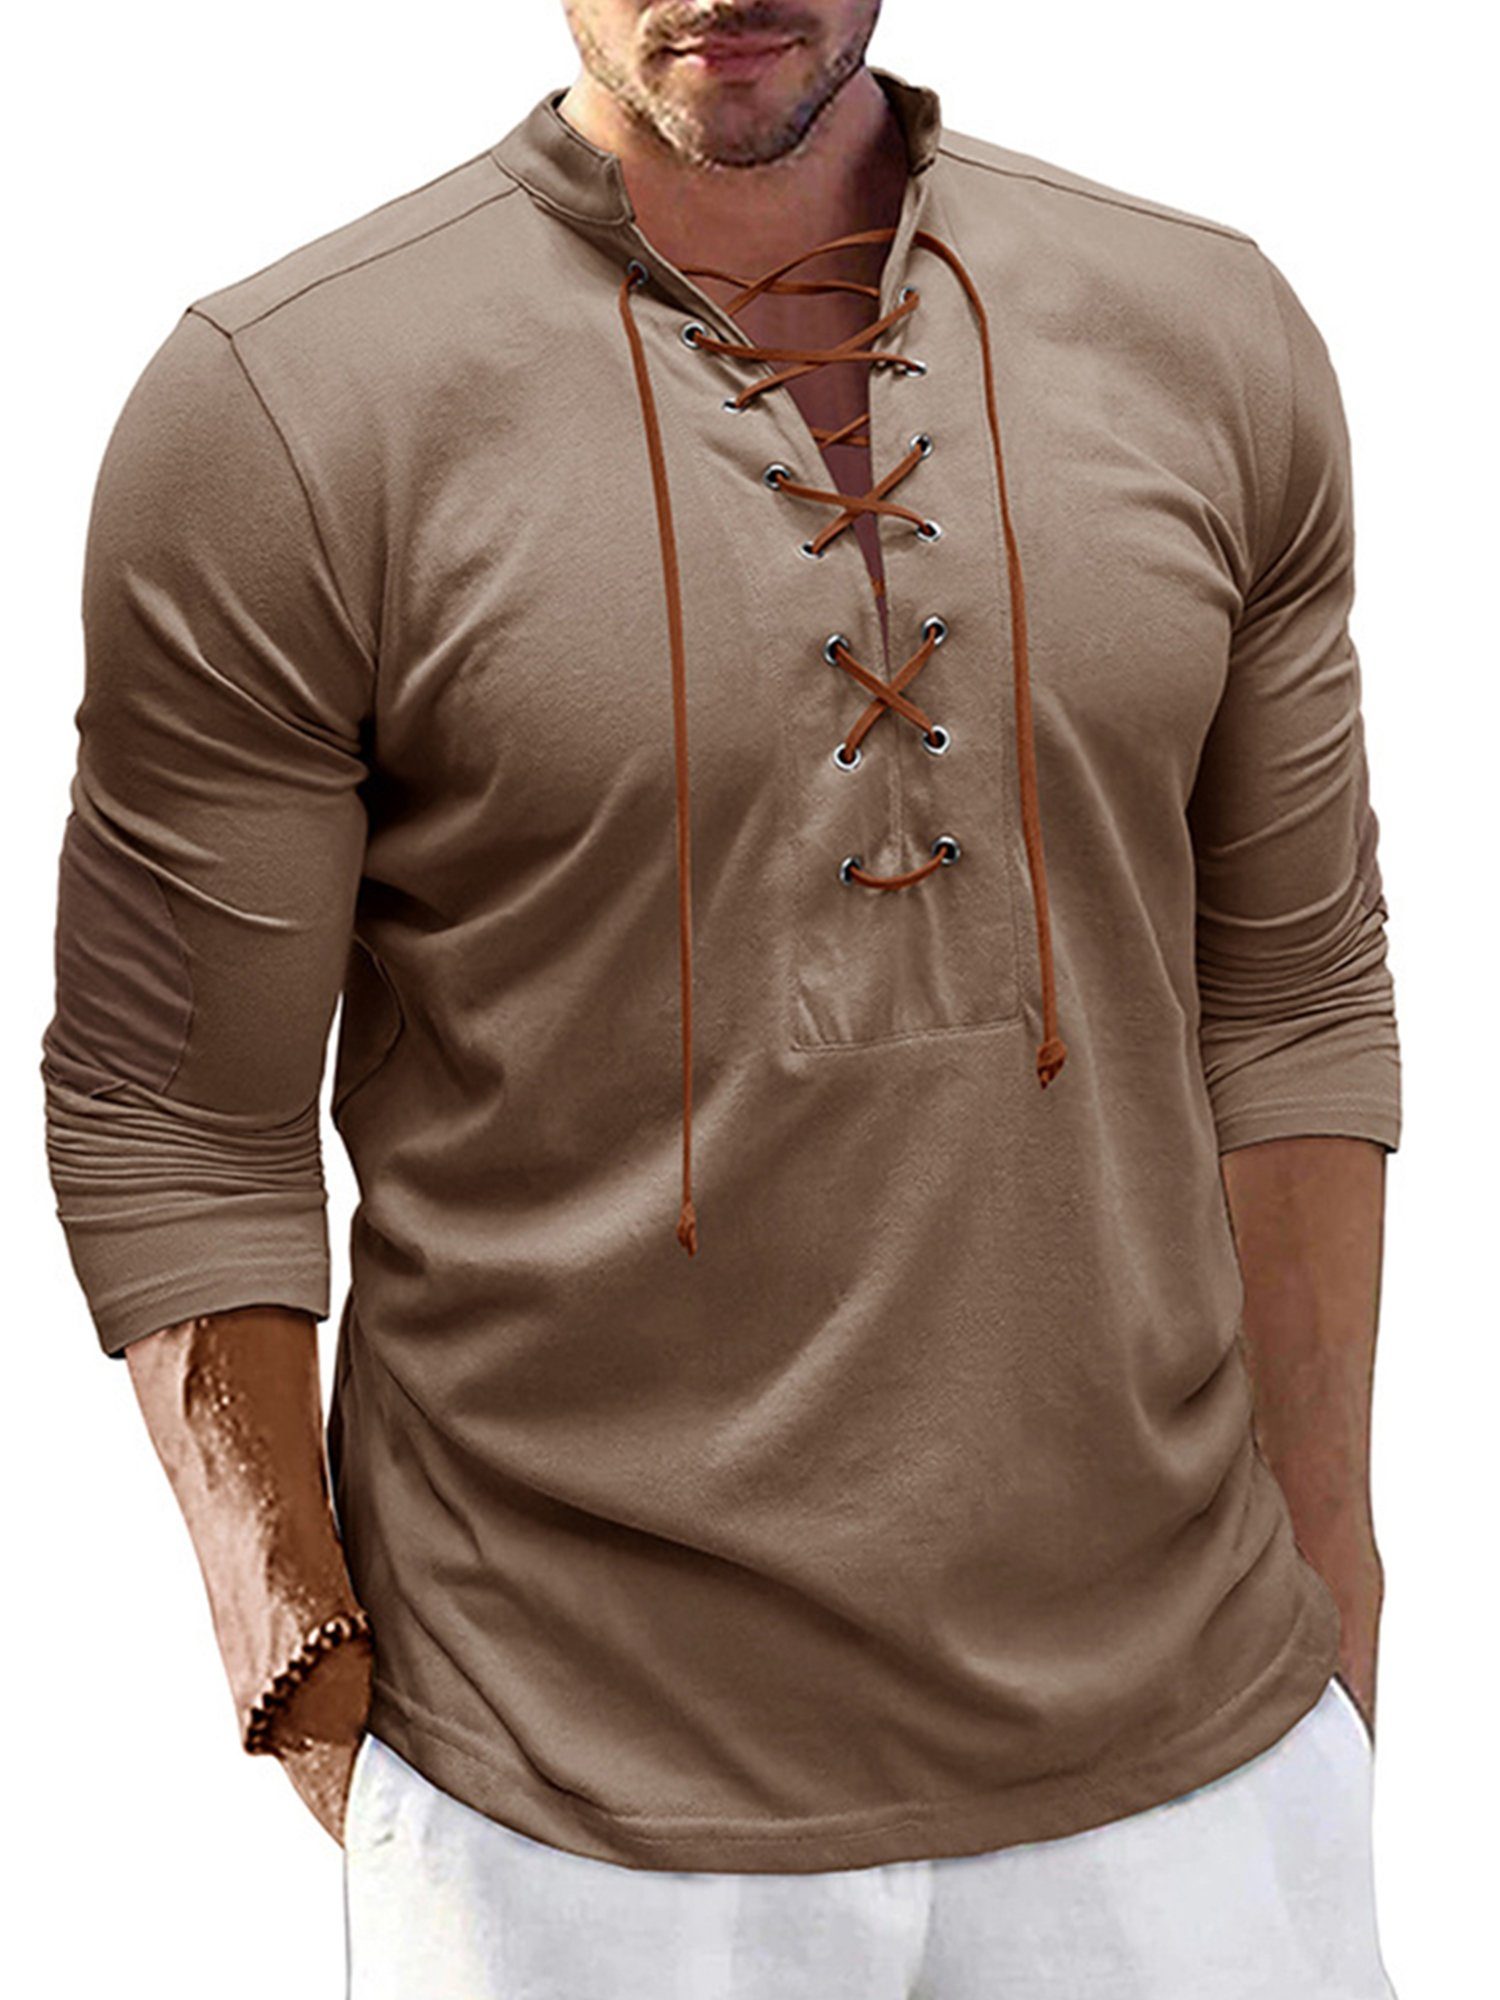 Lapastyle Langarmshirt Herren V-Ausschnitt Henleyshirt mit Stehkragen Lässiges T-shirt einfarbig Top, Bindedesign am Brustausschnitt Khaki